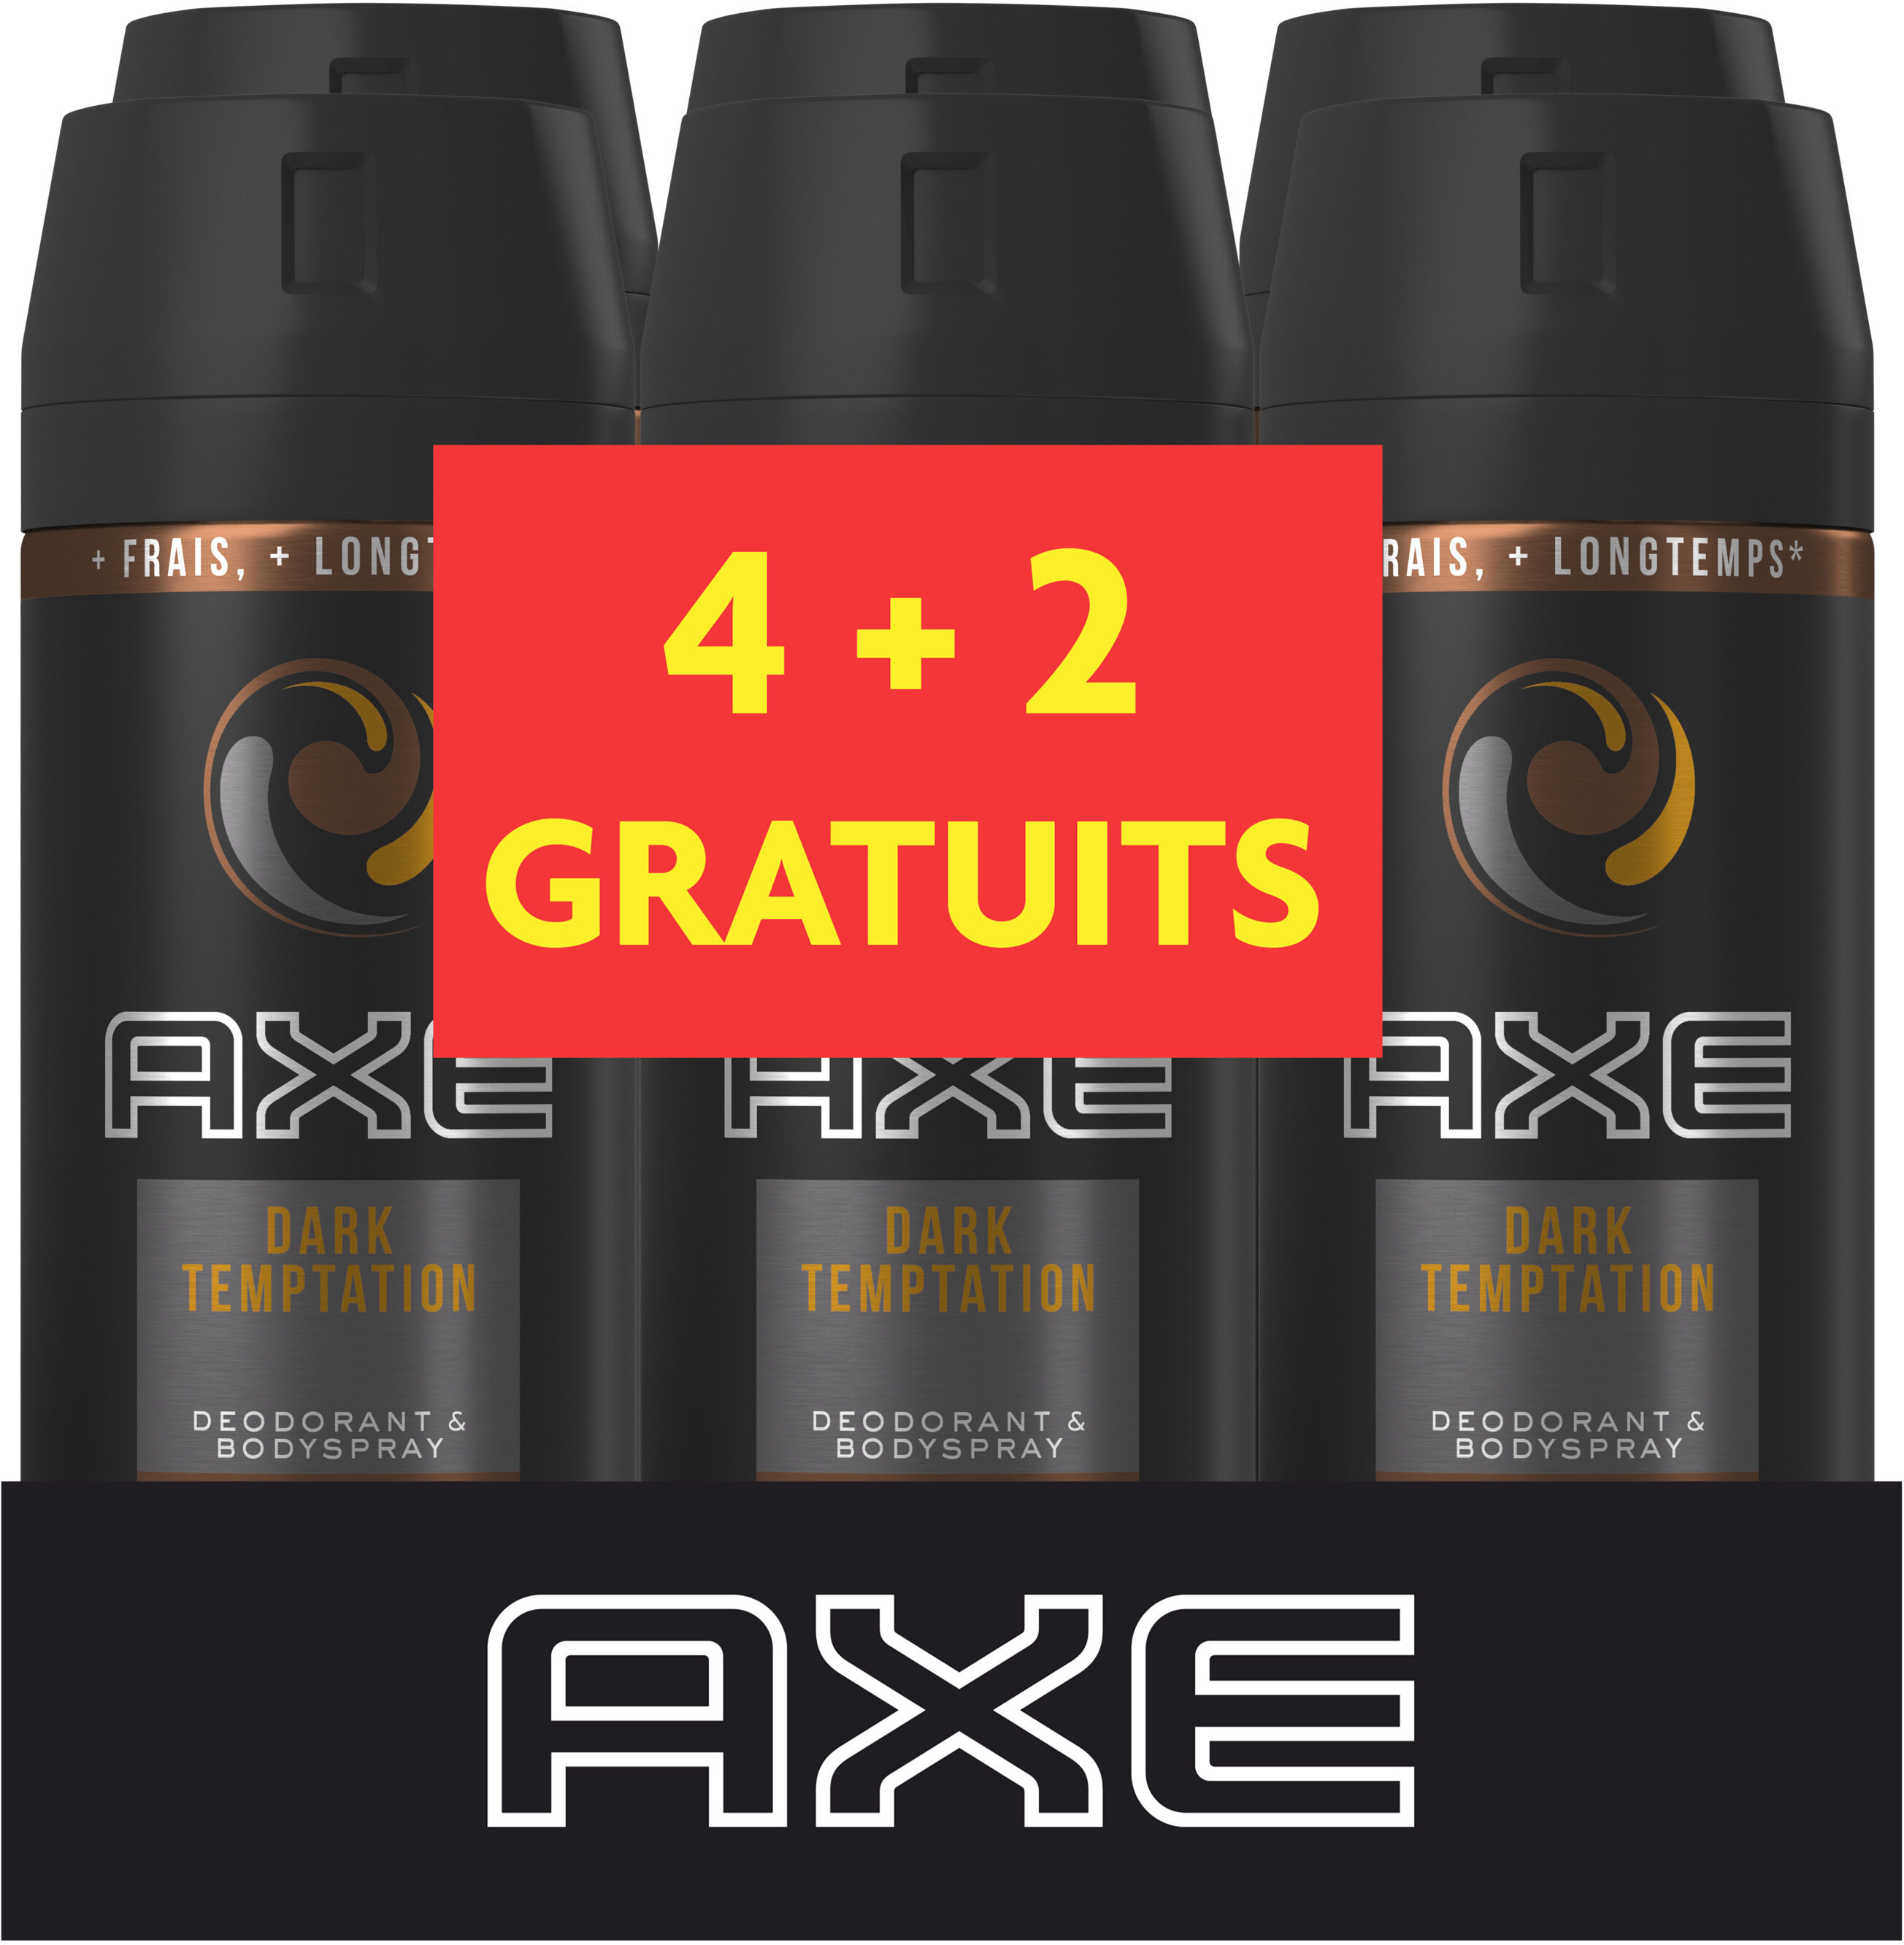 AXE Déodorant Homme Spray Dark Temptation Lot 6X150ML - Product - fr